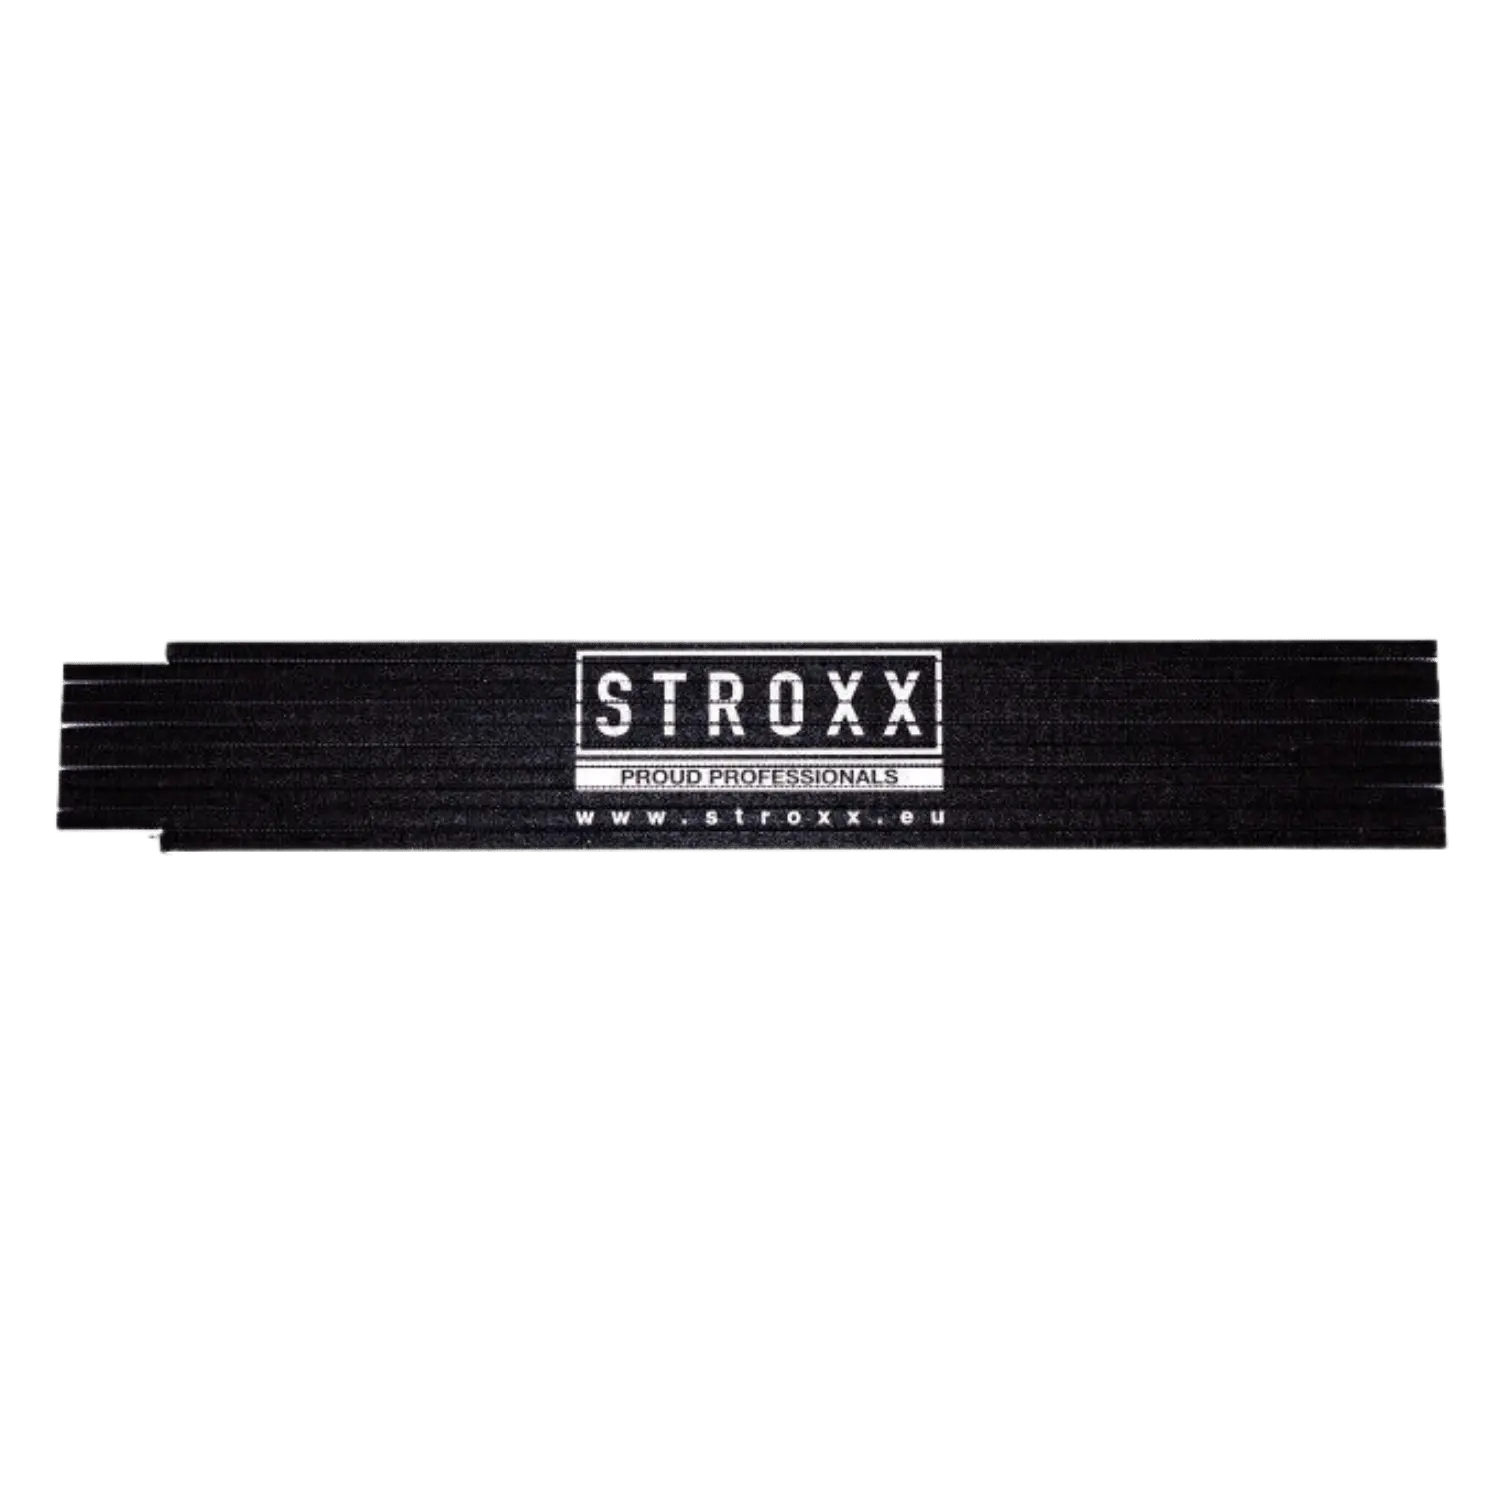 Zwarte STROXX vouwmeter. Opgeplooid. Groot STROXX logo.